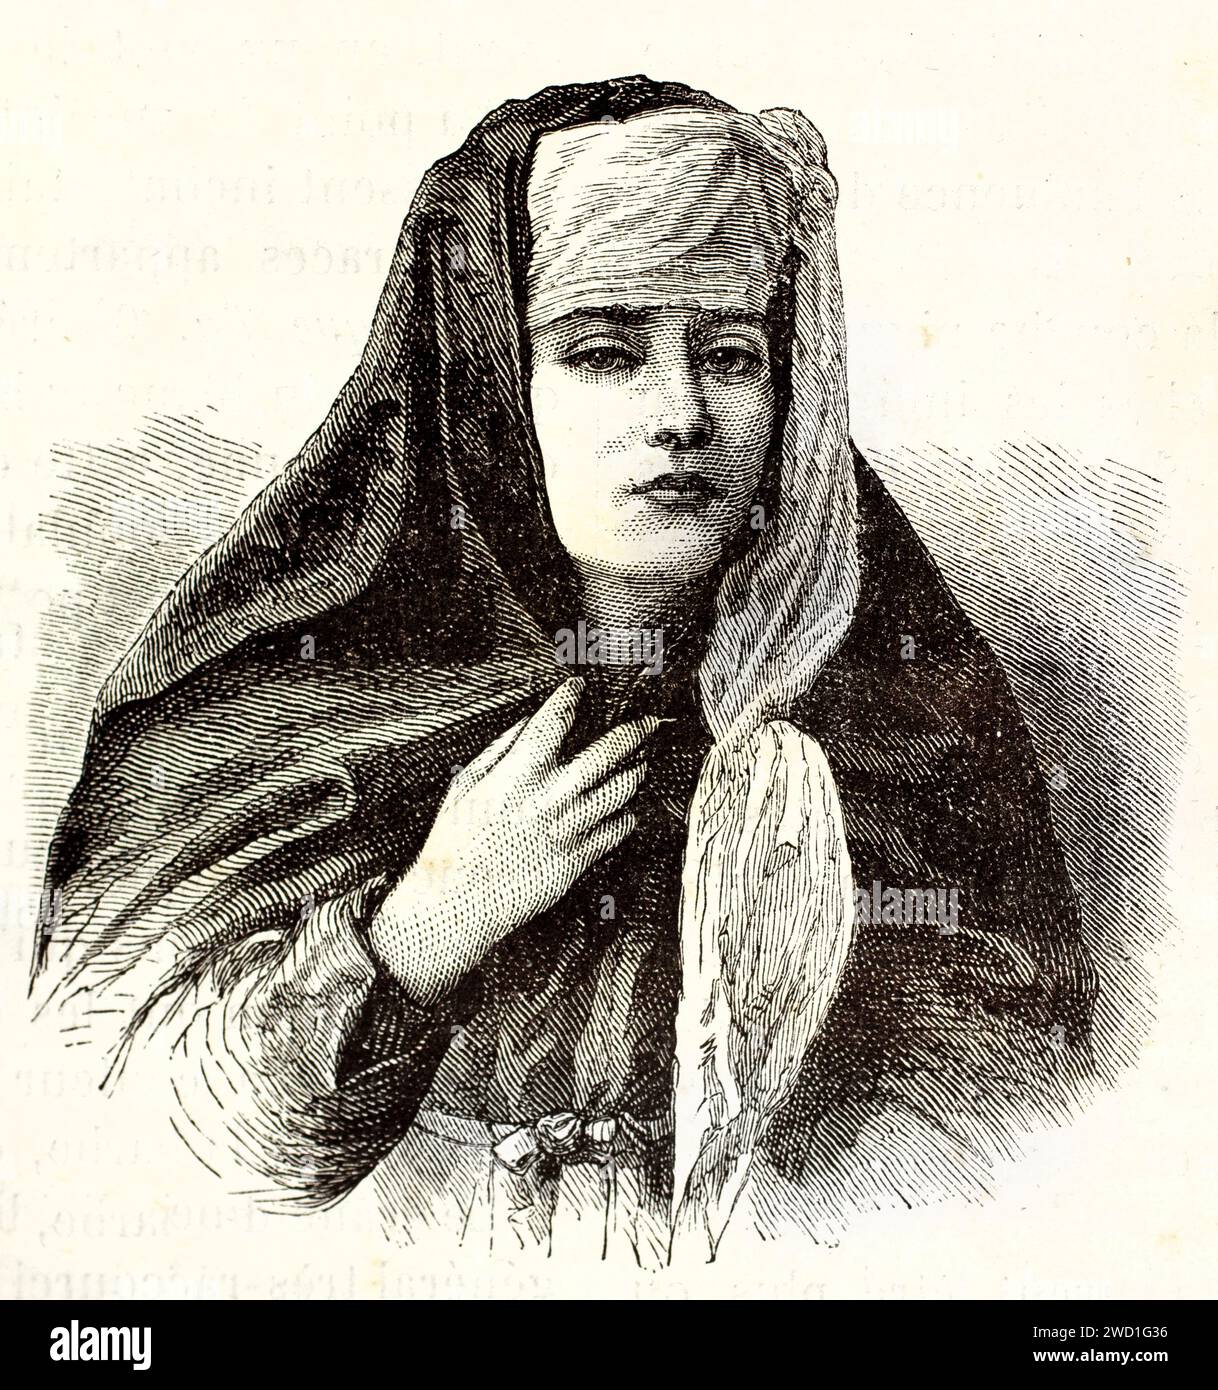 Vecchio portait inciso di donna donna donna. Creato da Bocourt e Dumont, pubblicato su Brehm, Les Mammifers, Baillière et fils, Parigi, 1878 Foto Stock